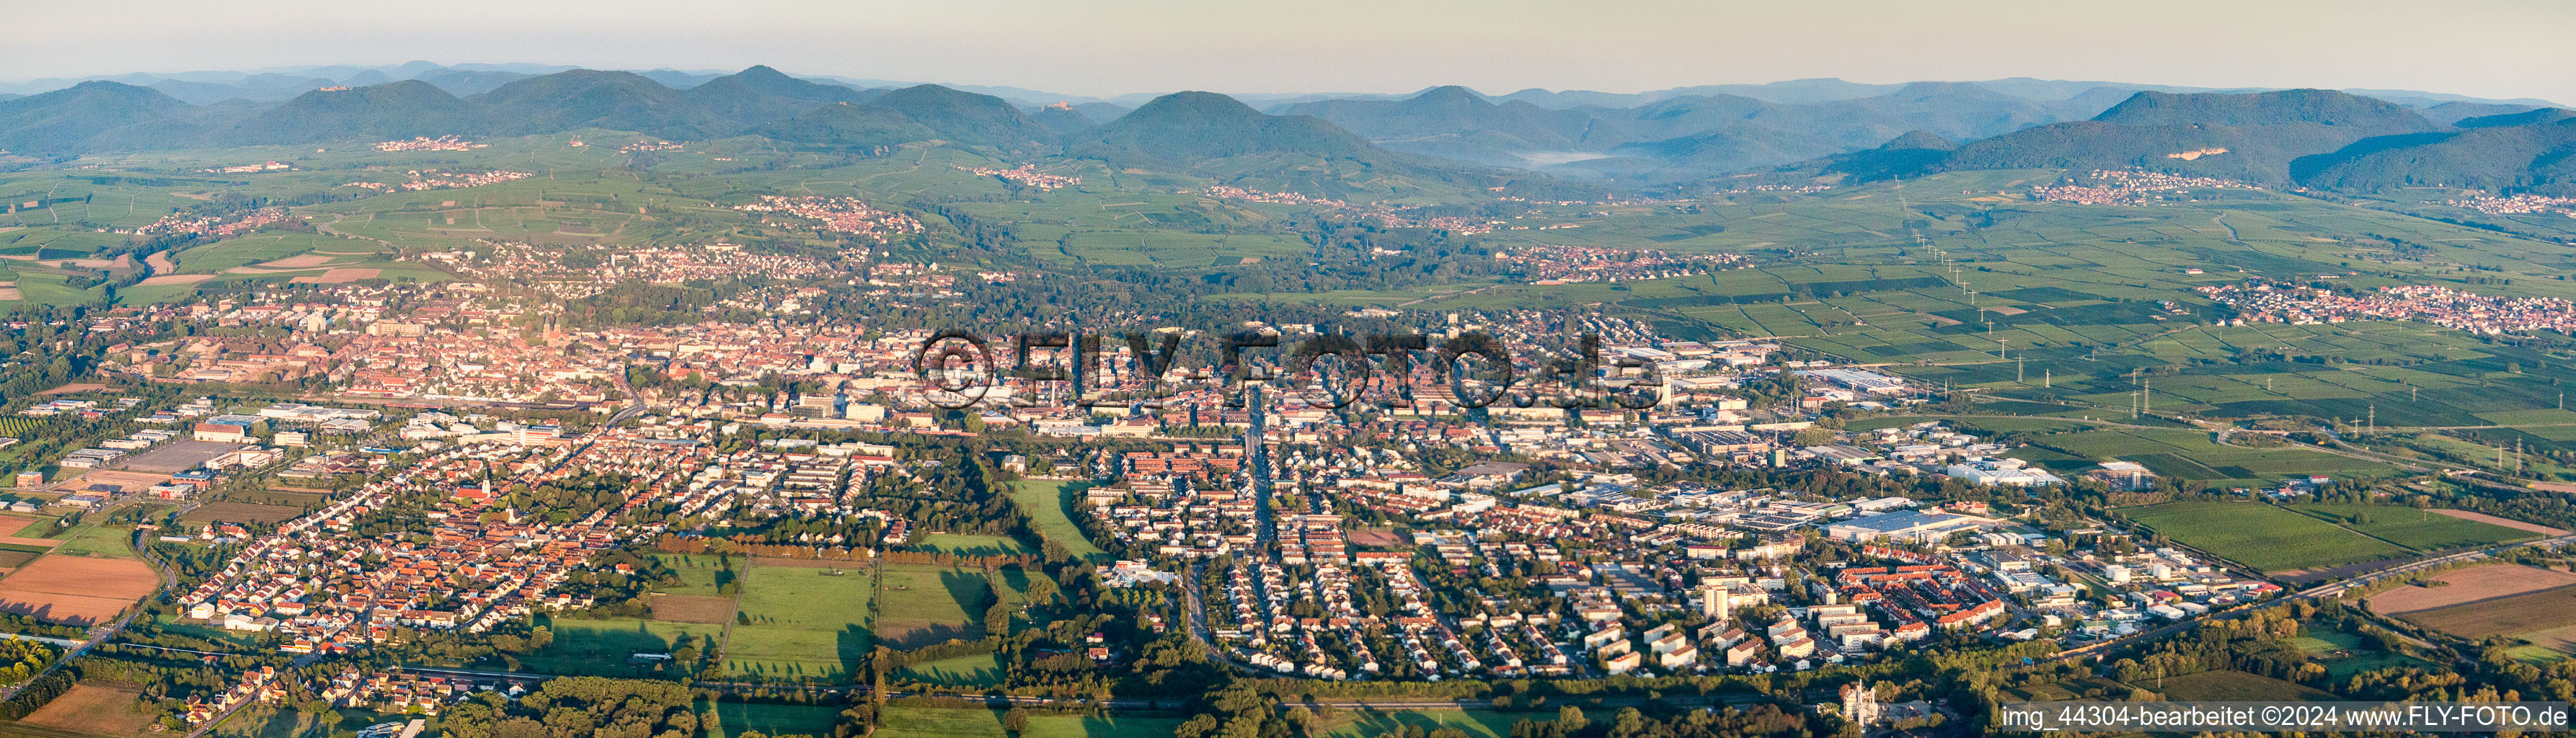 Luftaufnahme von Panorama Perspektive Stadtgebiet mit Außenbezirken und Innenstadtbereich in Landau in der Pfalz im Ortsteil Queichheim im Bundesland Rheinland-Pfalz, Deutschland